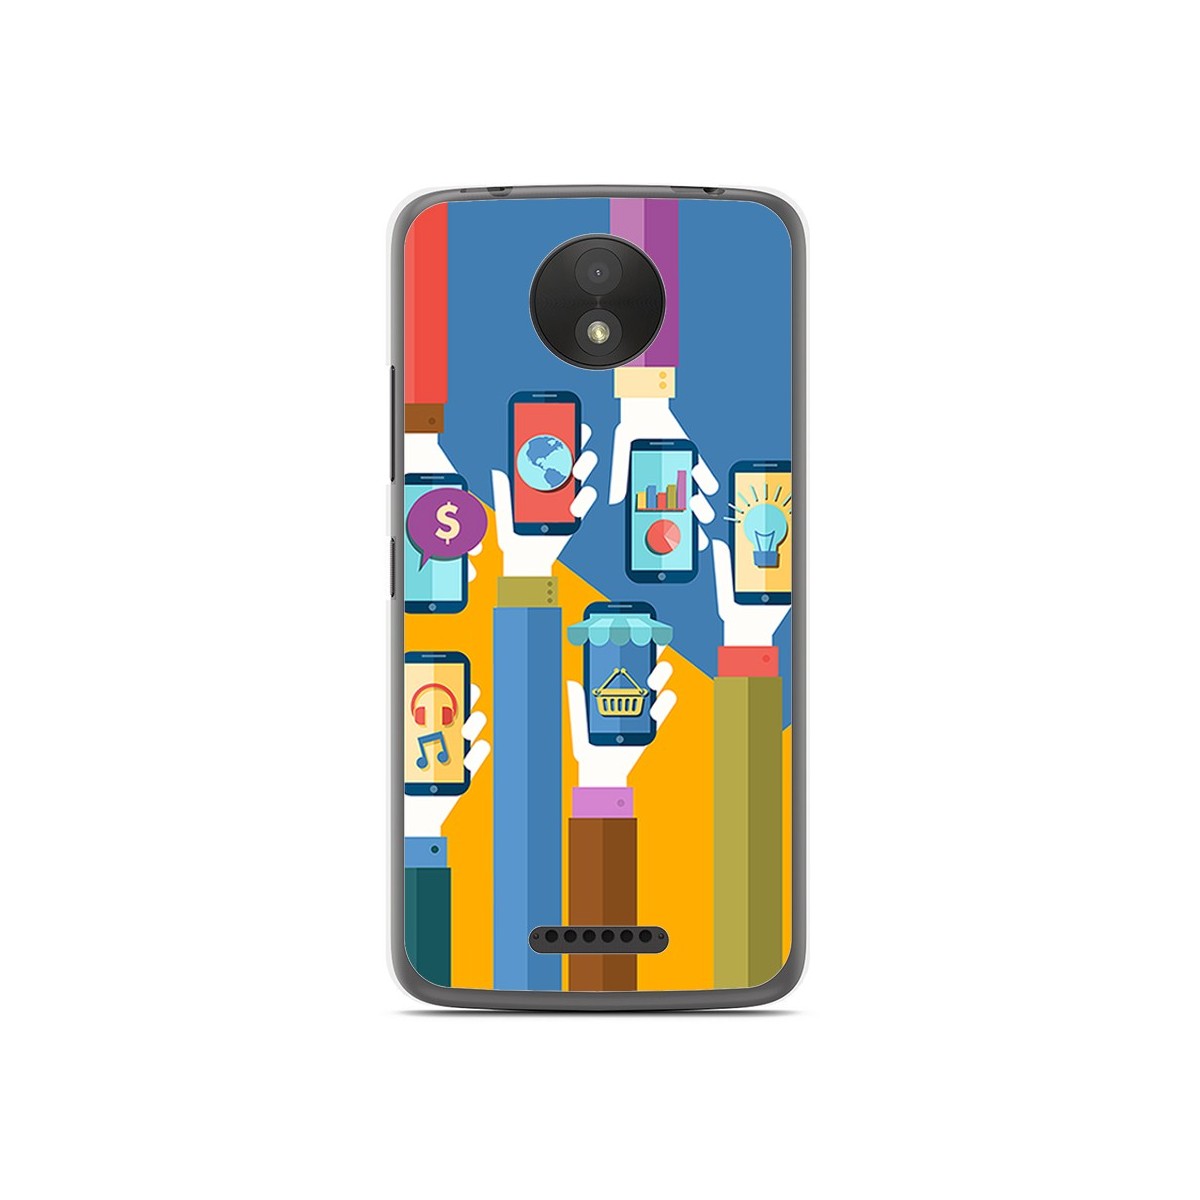 Funda Gel Tpu para Motorola Moto C Plus Diseño Apps Dibujos